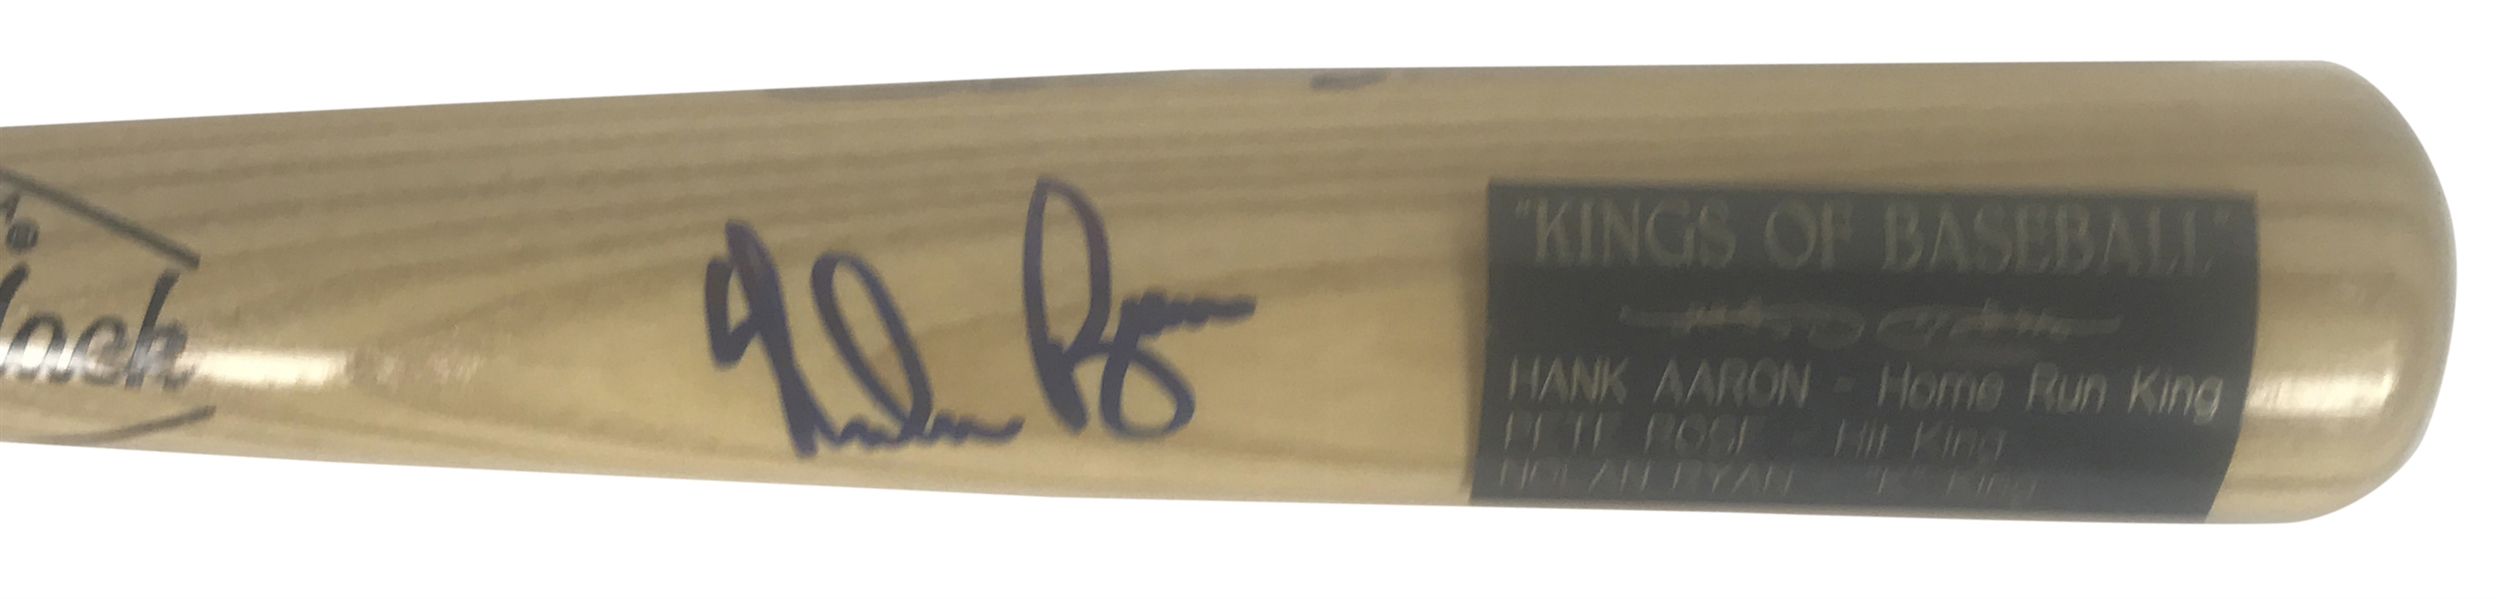 Kings Of Baseball Multi-Signed Baseball Bat w/ Ryan, Aaron & Rose! (Beckett/BAS Guaranteed)